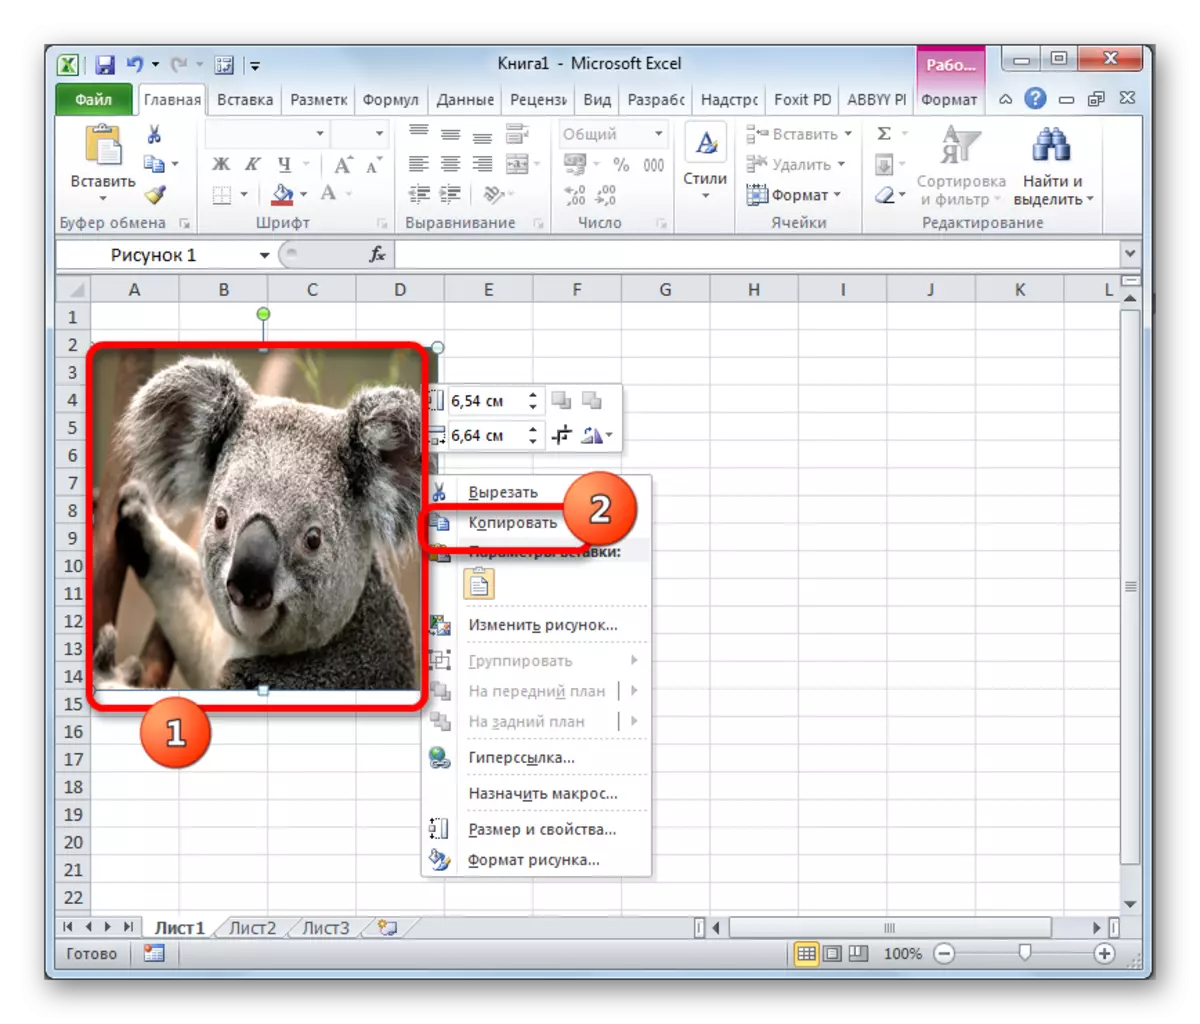 Copia a imaxe a través do menú contextual en Microsoft Excel